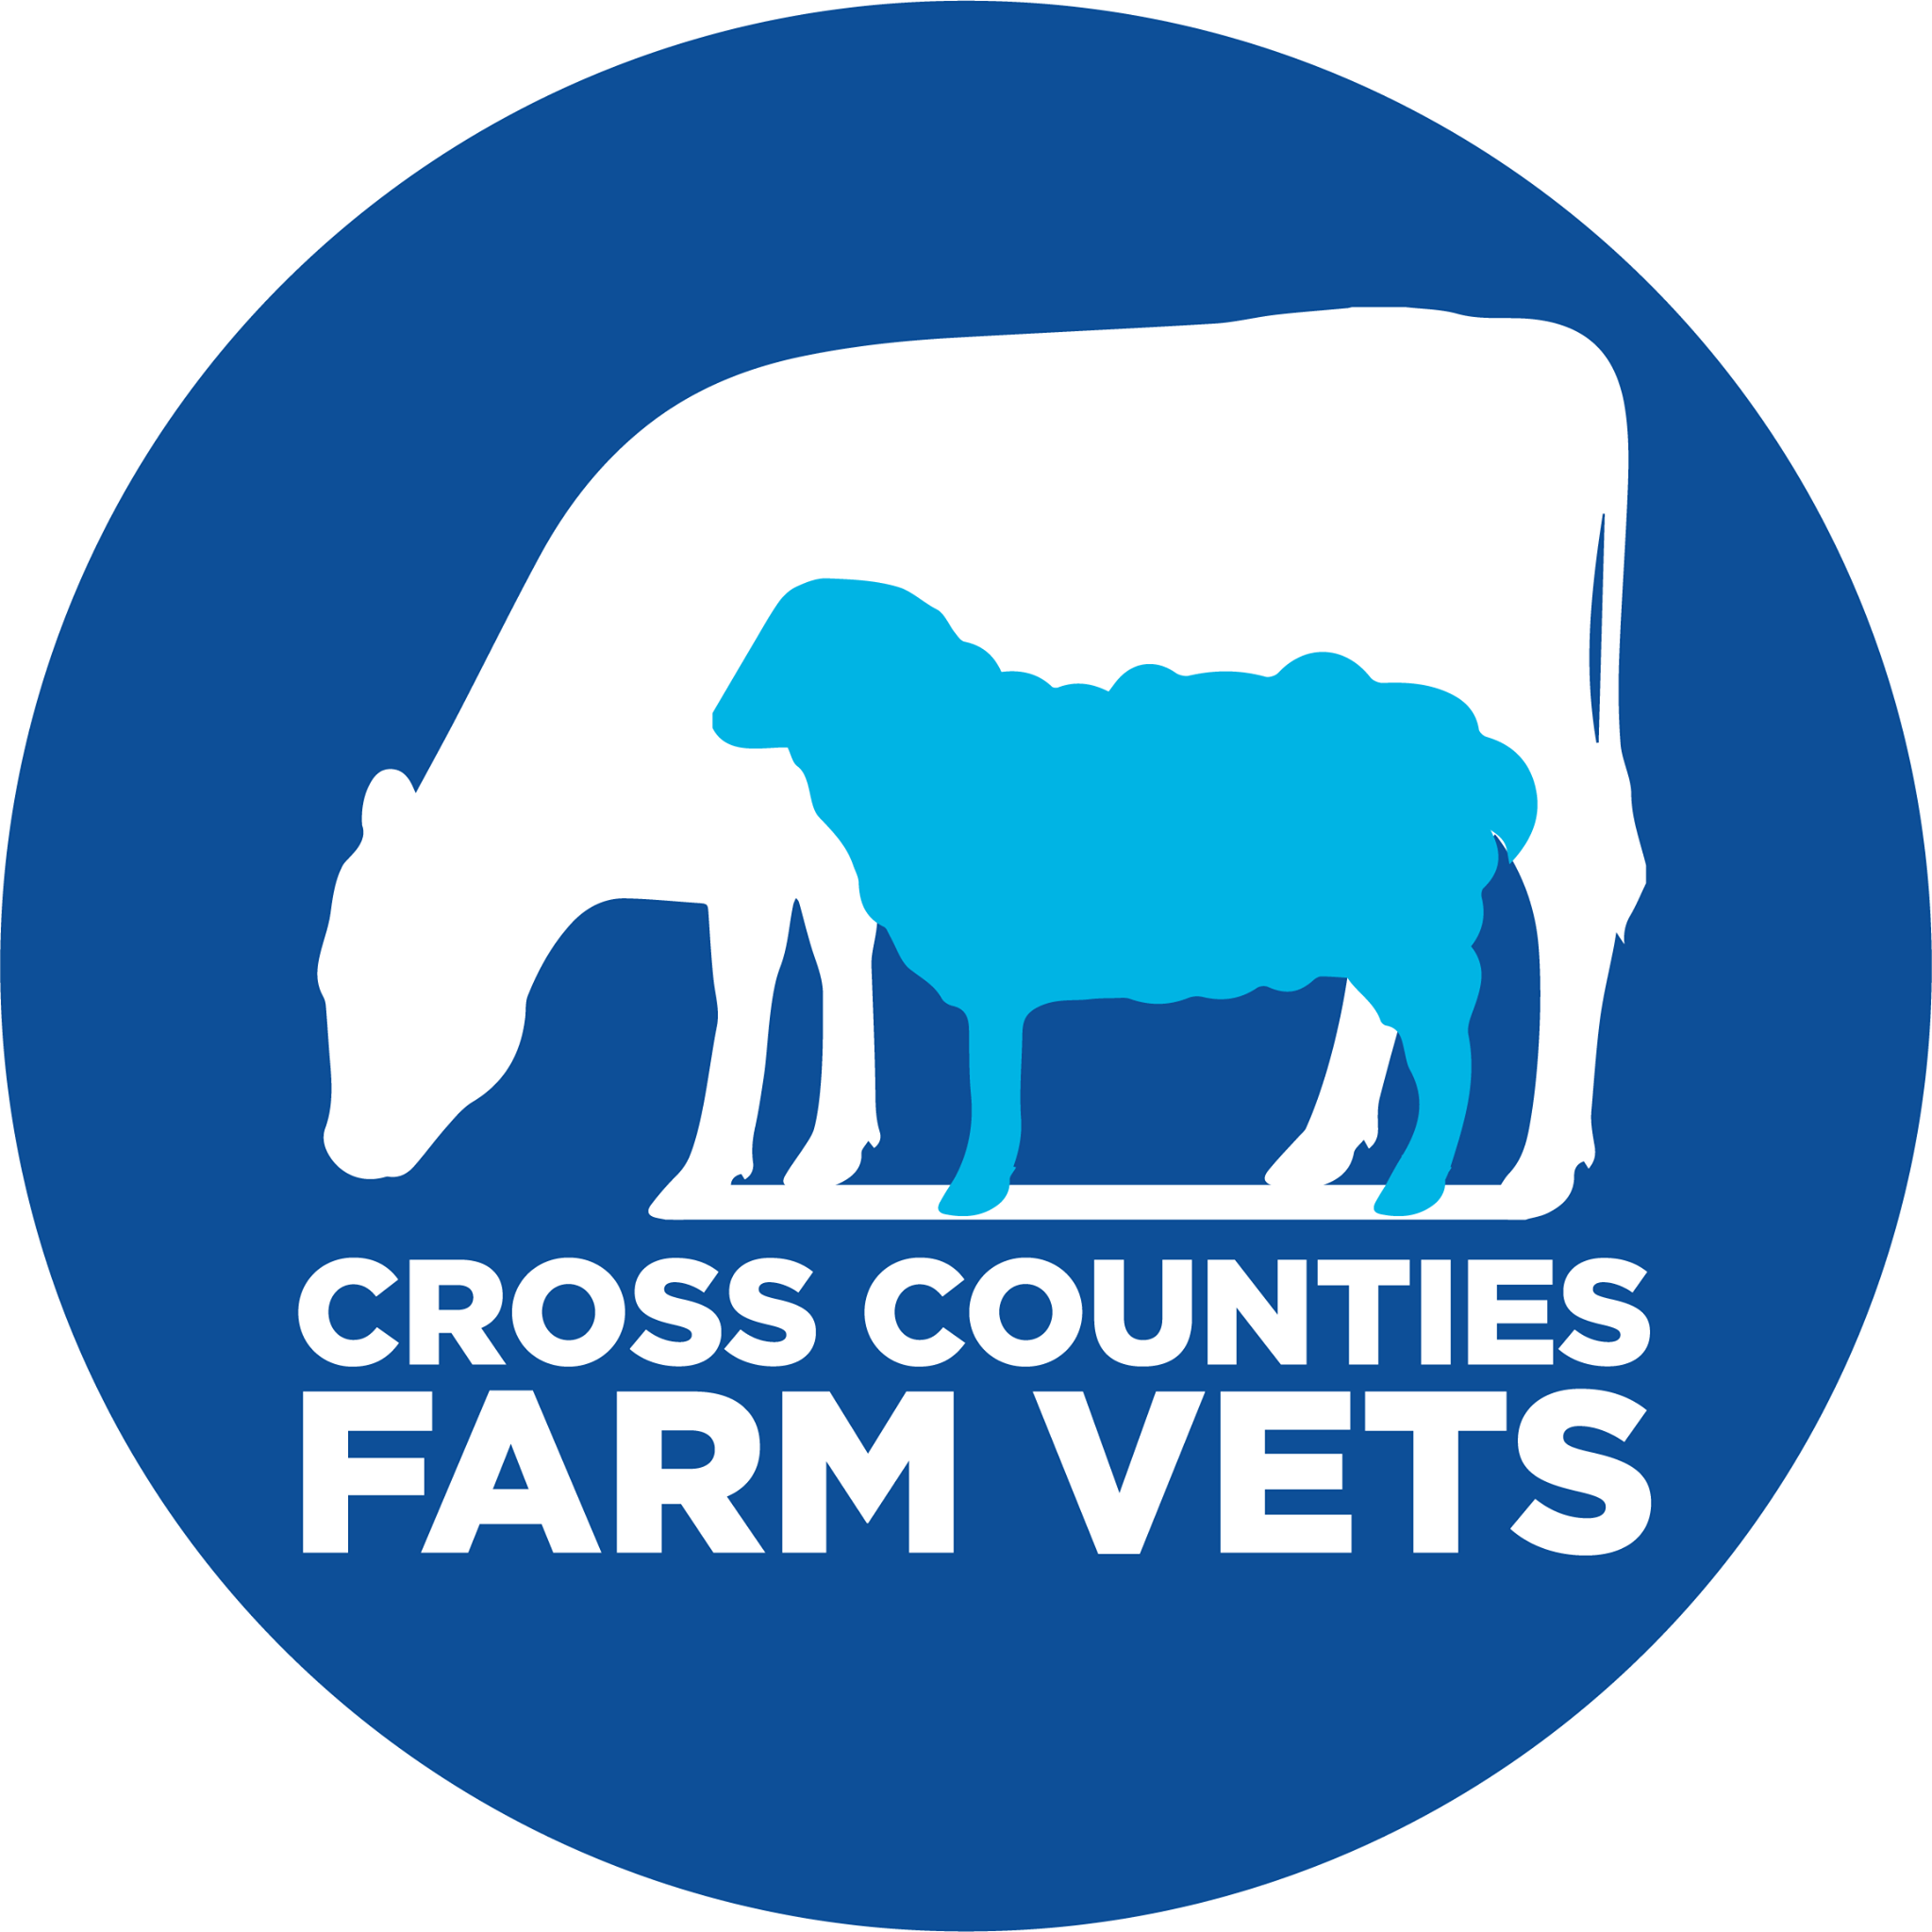 Cross Counties Farm Vets - Lutterworth Logo